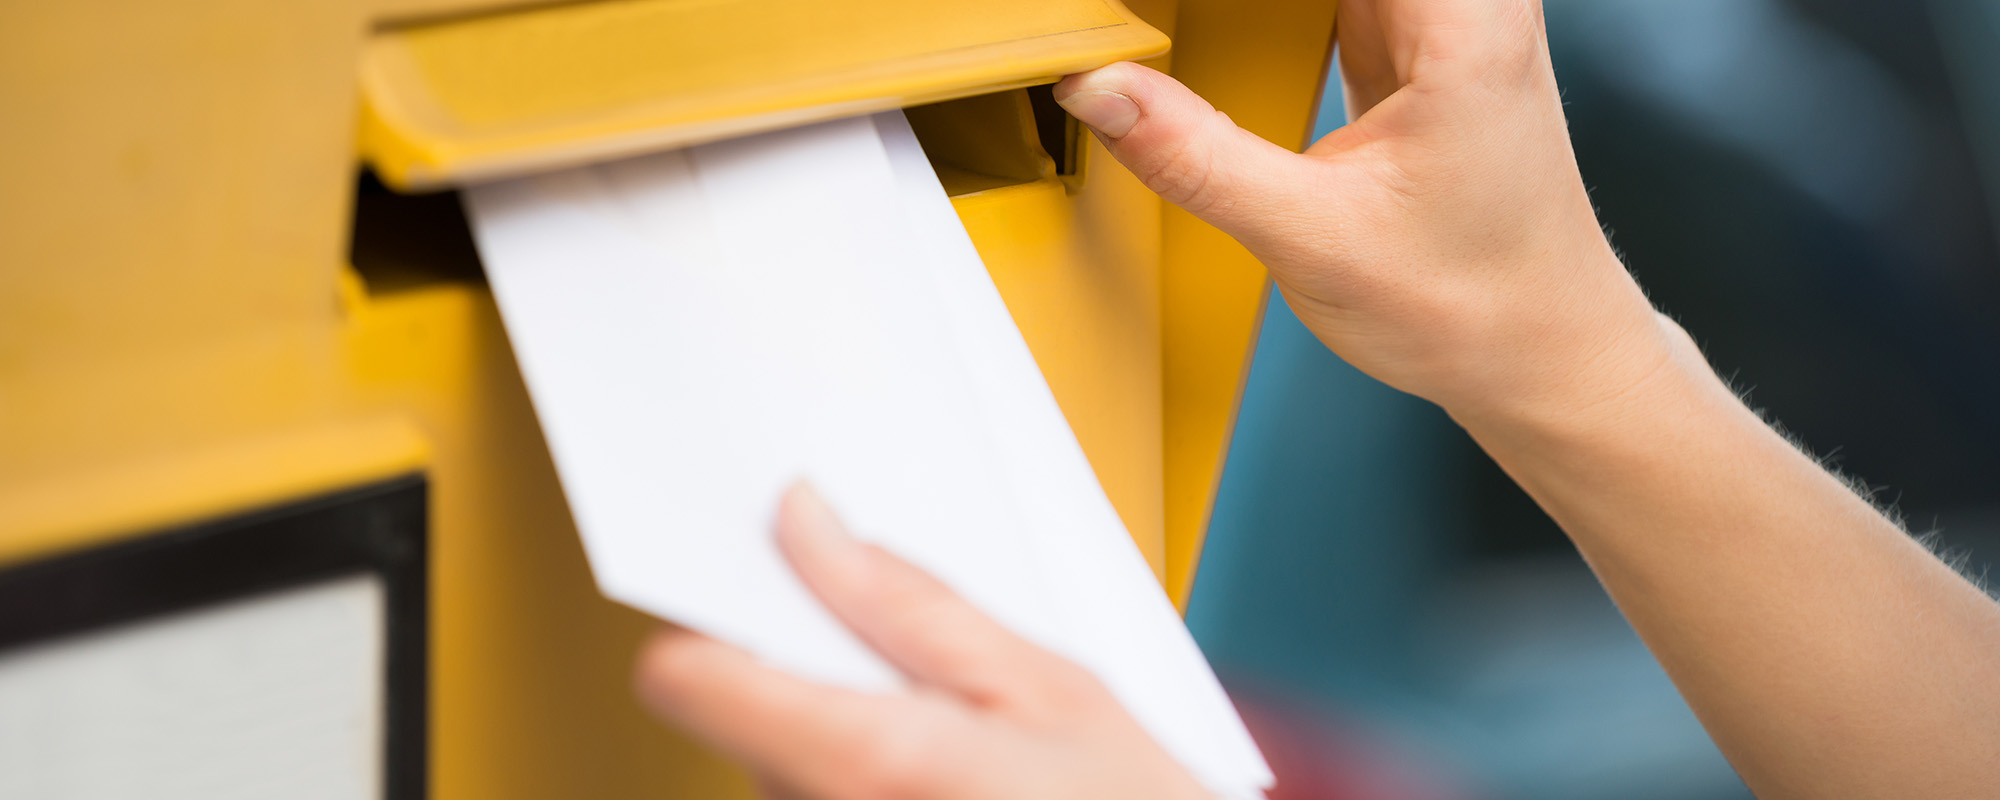 Im Bildausschnitt ist zu sehen, wie eine Person einen Brief in einen Briefkasten der Deutschen Post wirft.